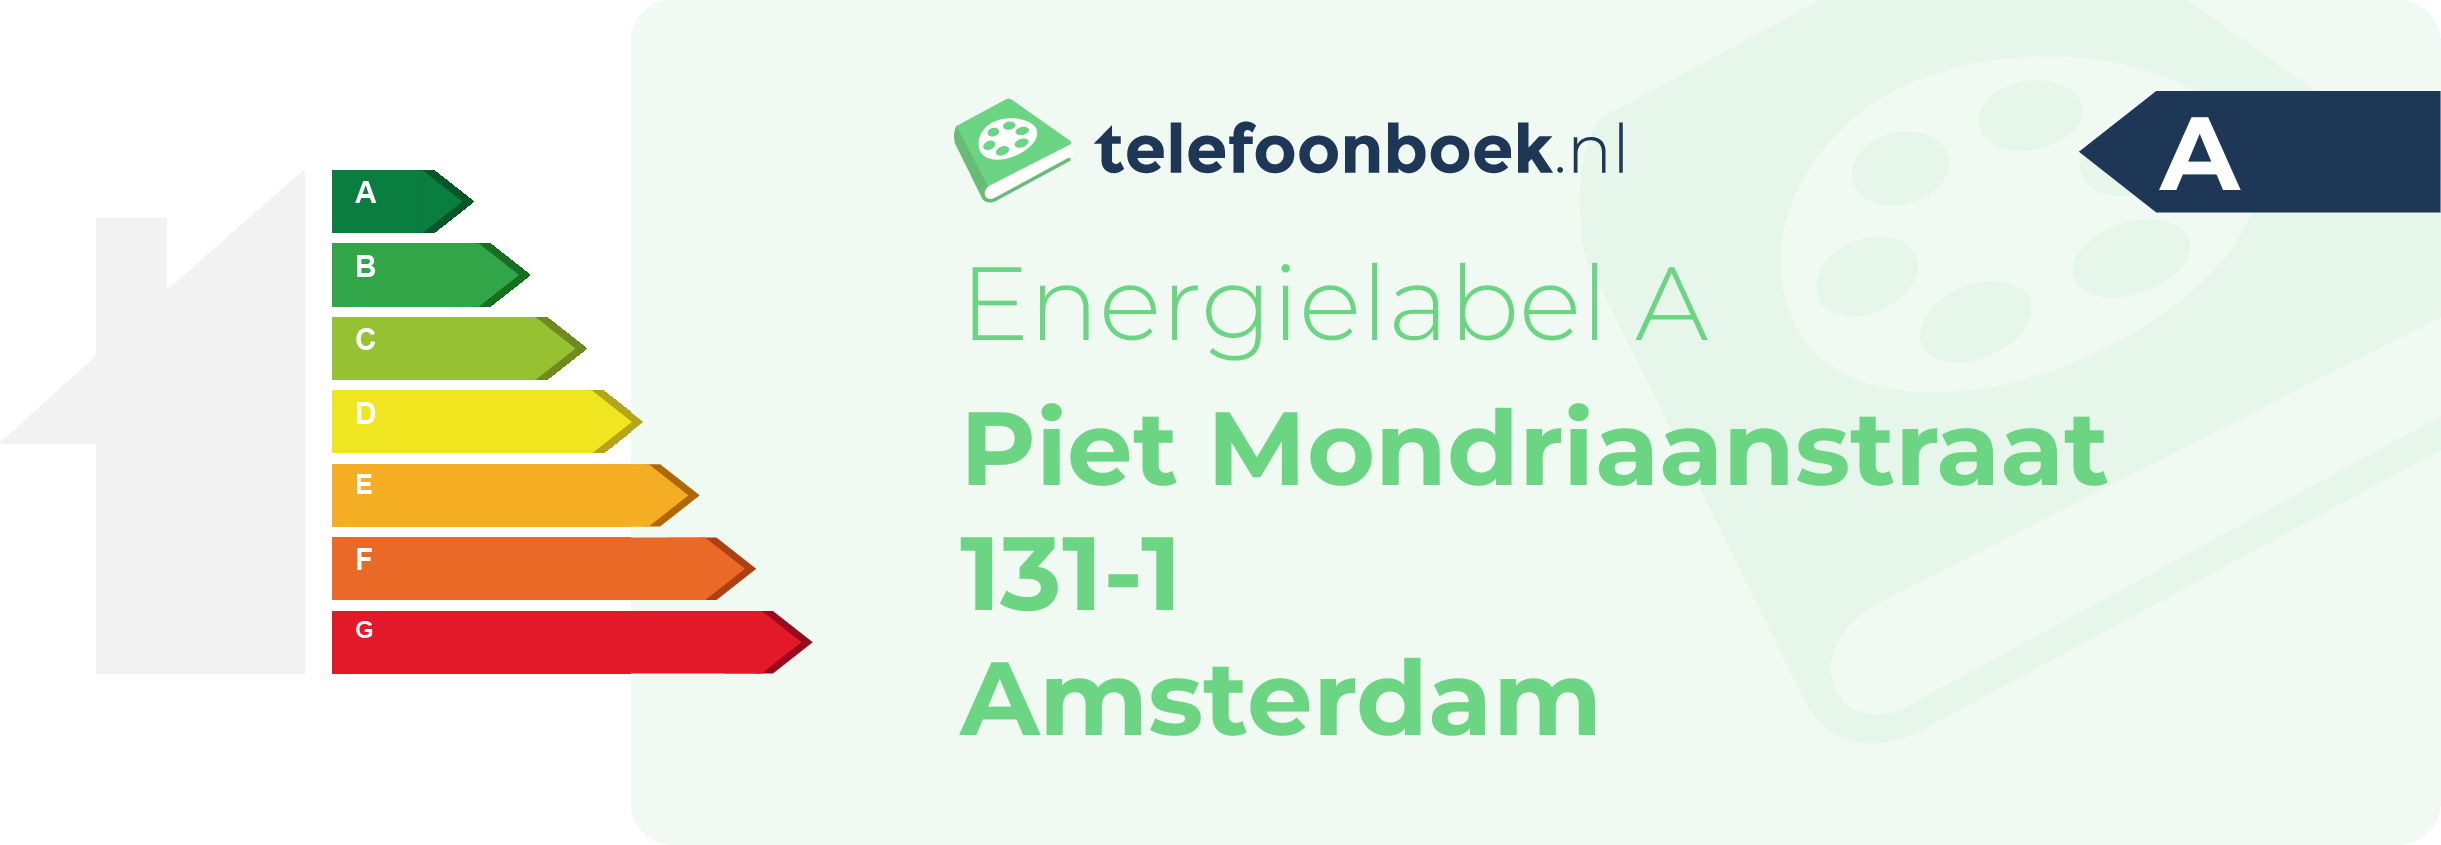 Energielabel Piet Mondriaanstraat 131-1 Amsterdam